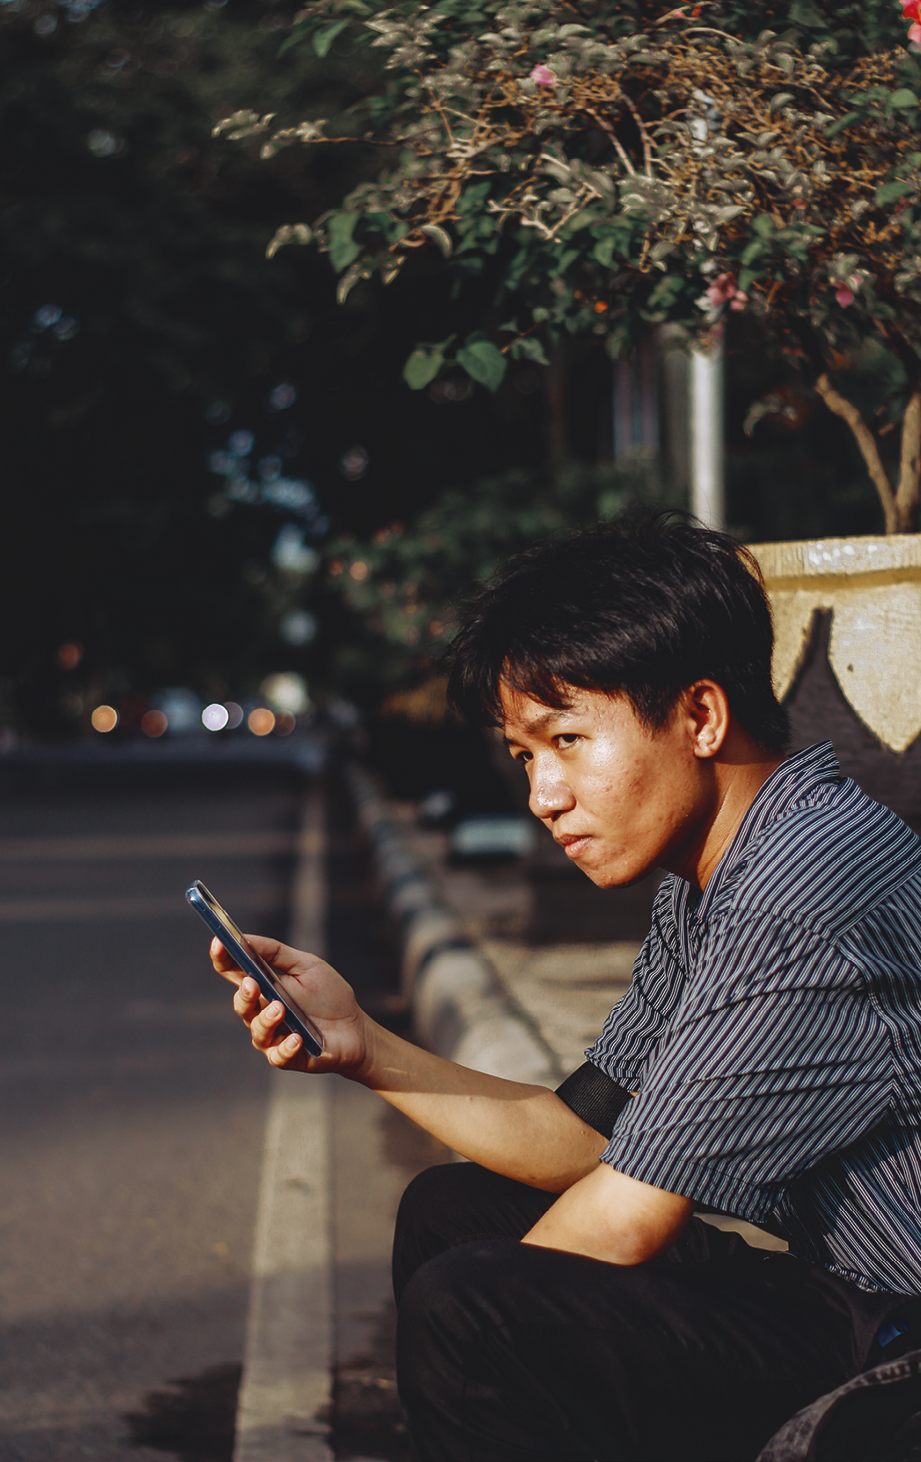 Fotografia. Garoto asiático de cabelos pretos lisos sentado em uma calçada, segurando um celular com a mão direita. Ele olha para a esquerda. Ao fundo, a rua está escura e há vegetação.